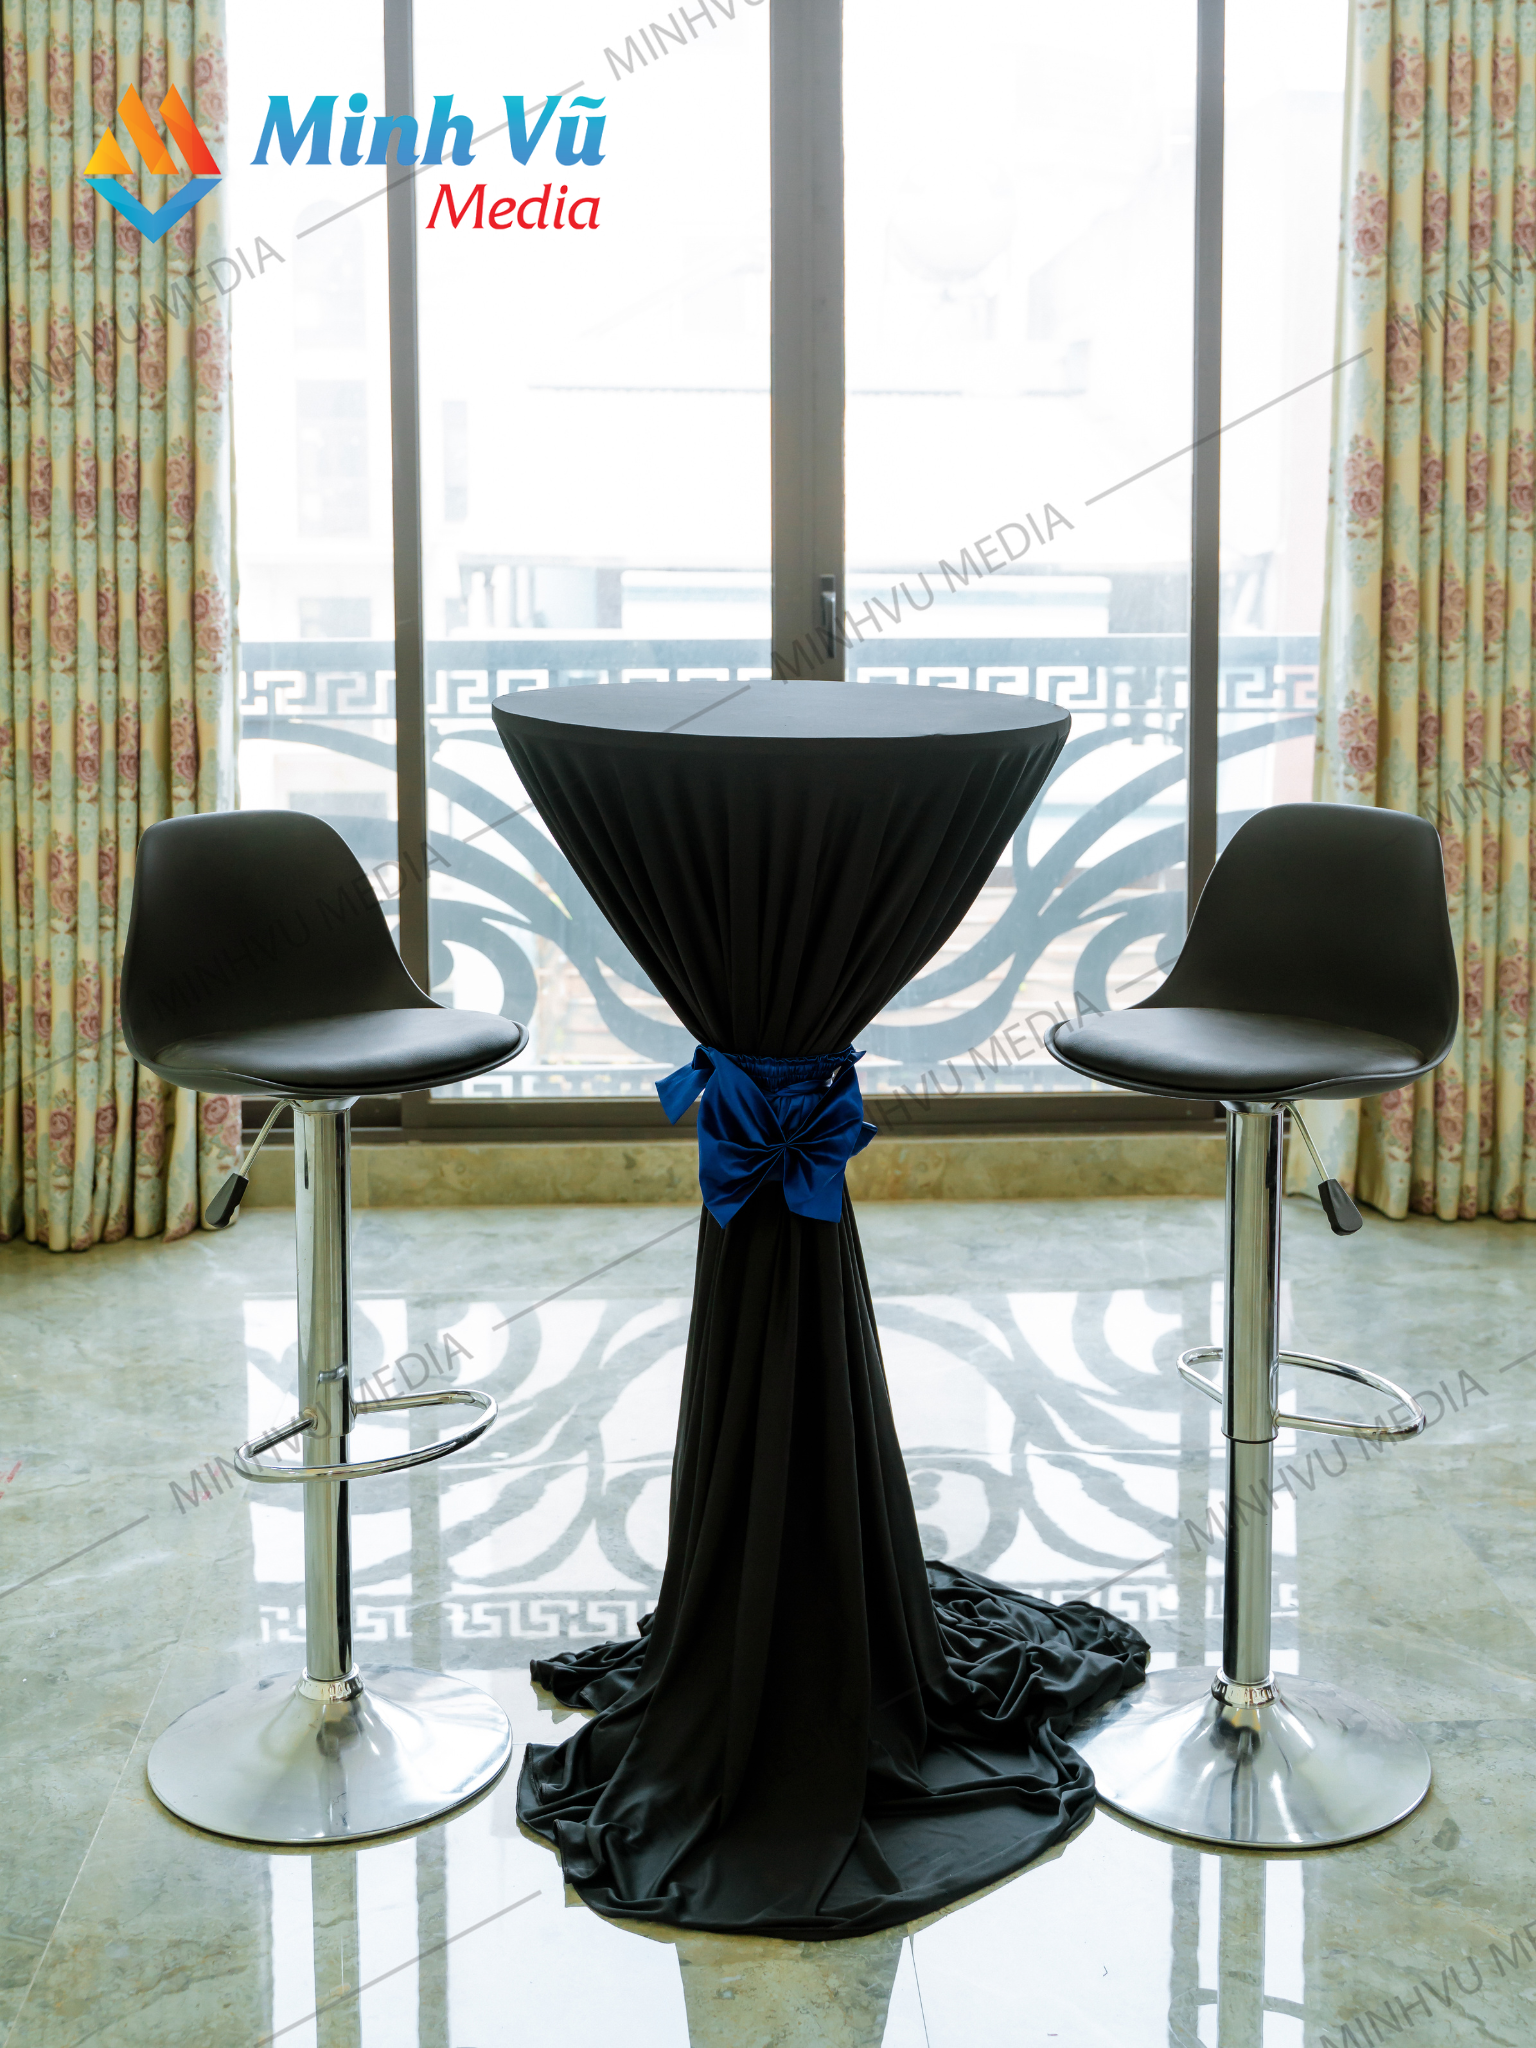 Minh Vũ Media cho thuê bàn bar đen nơ xanh dương và ghế bar đen